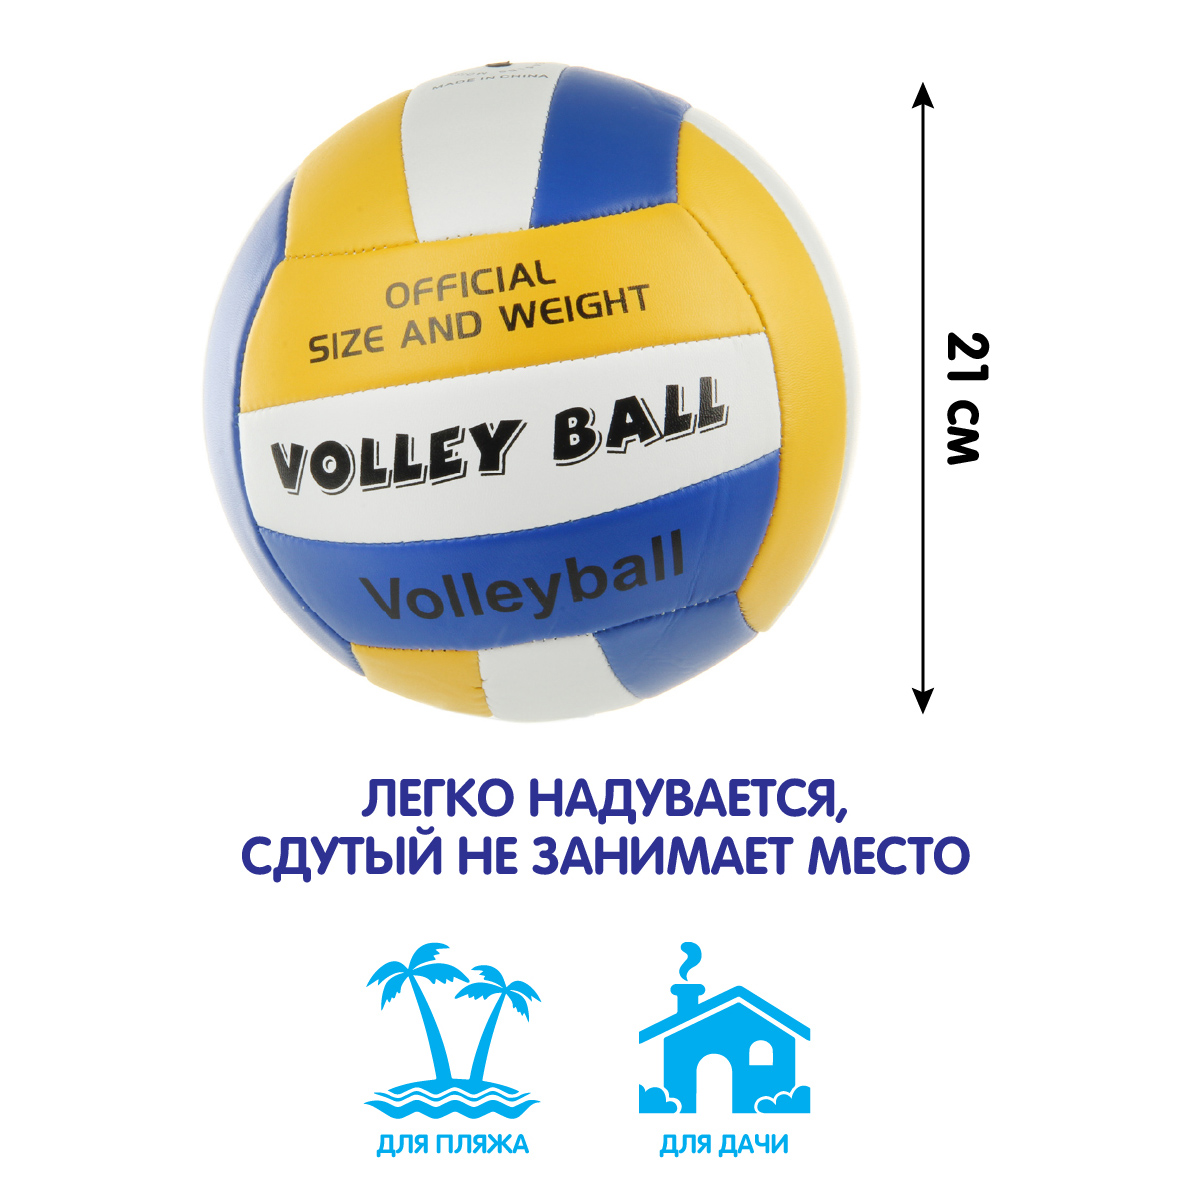 Мяч Veld Co волейбольный 21 см - фото 2